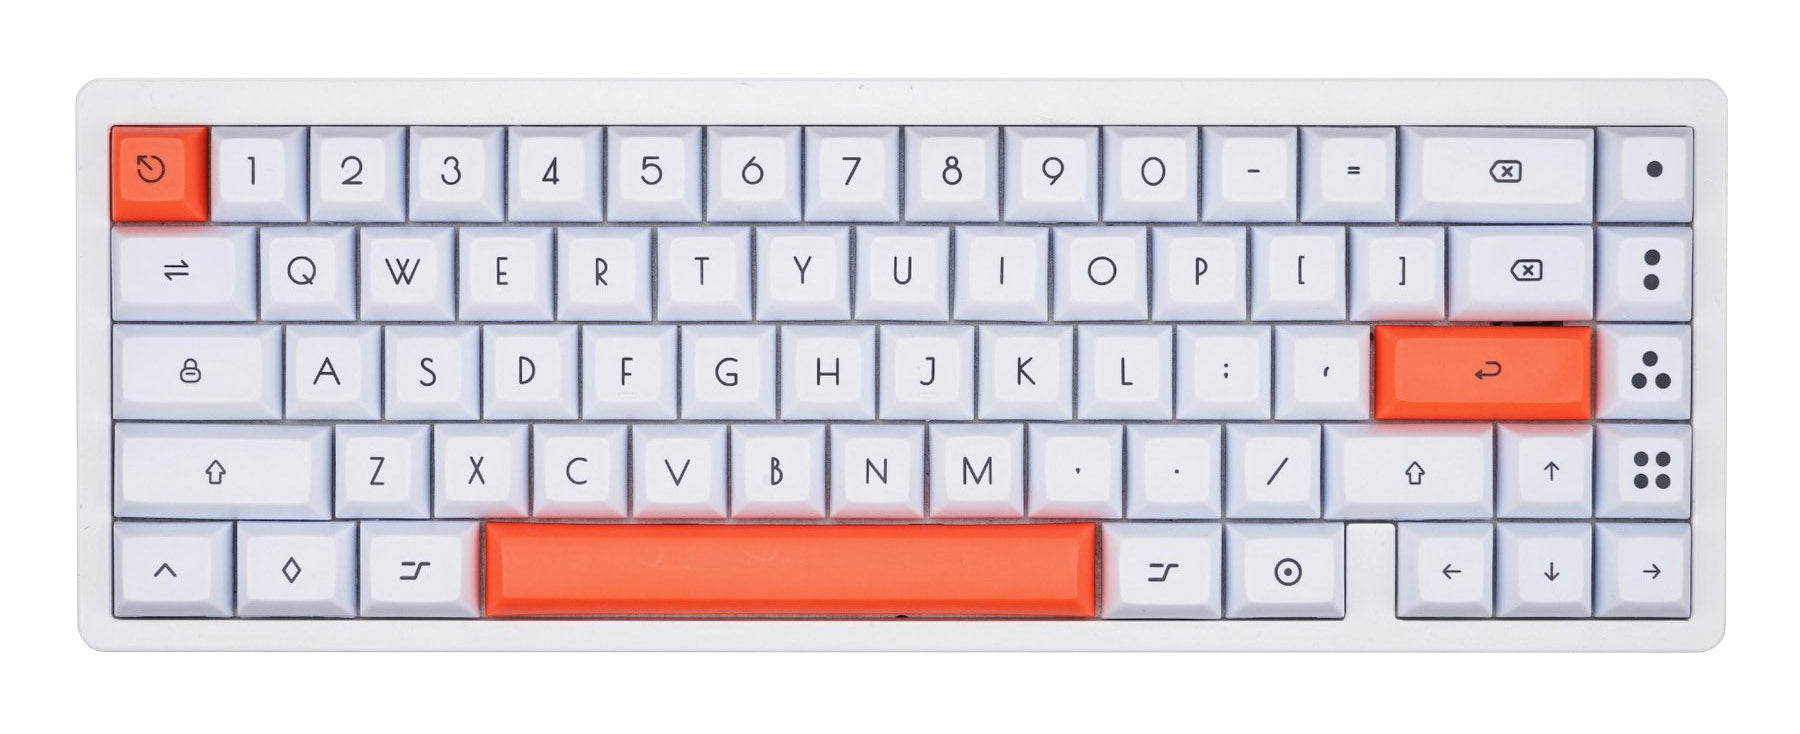 KBDFans Dye Sub PBT KAT Profile Keycap Set White/Orange MKSZP79O9M |0|